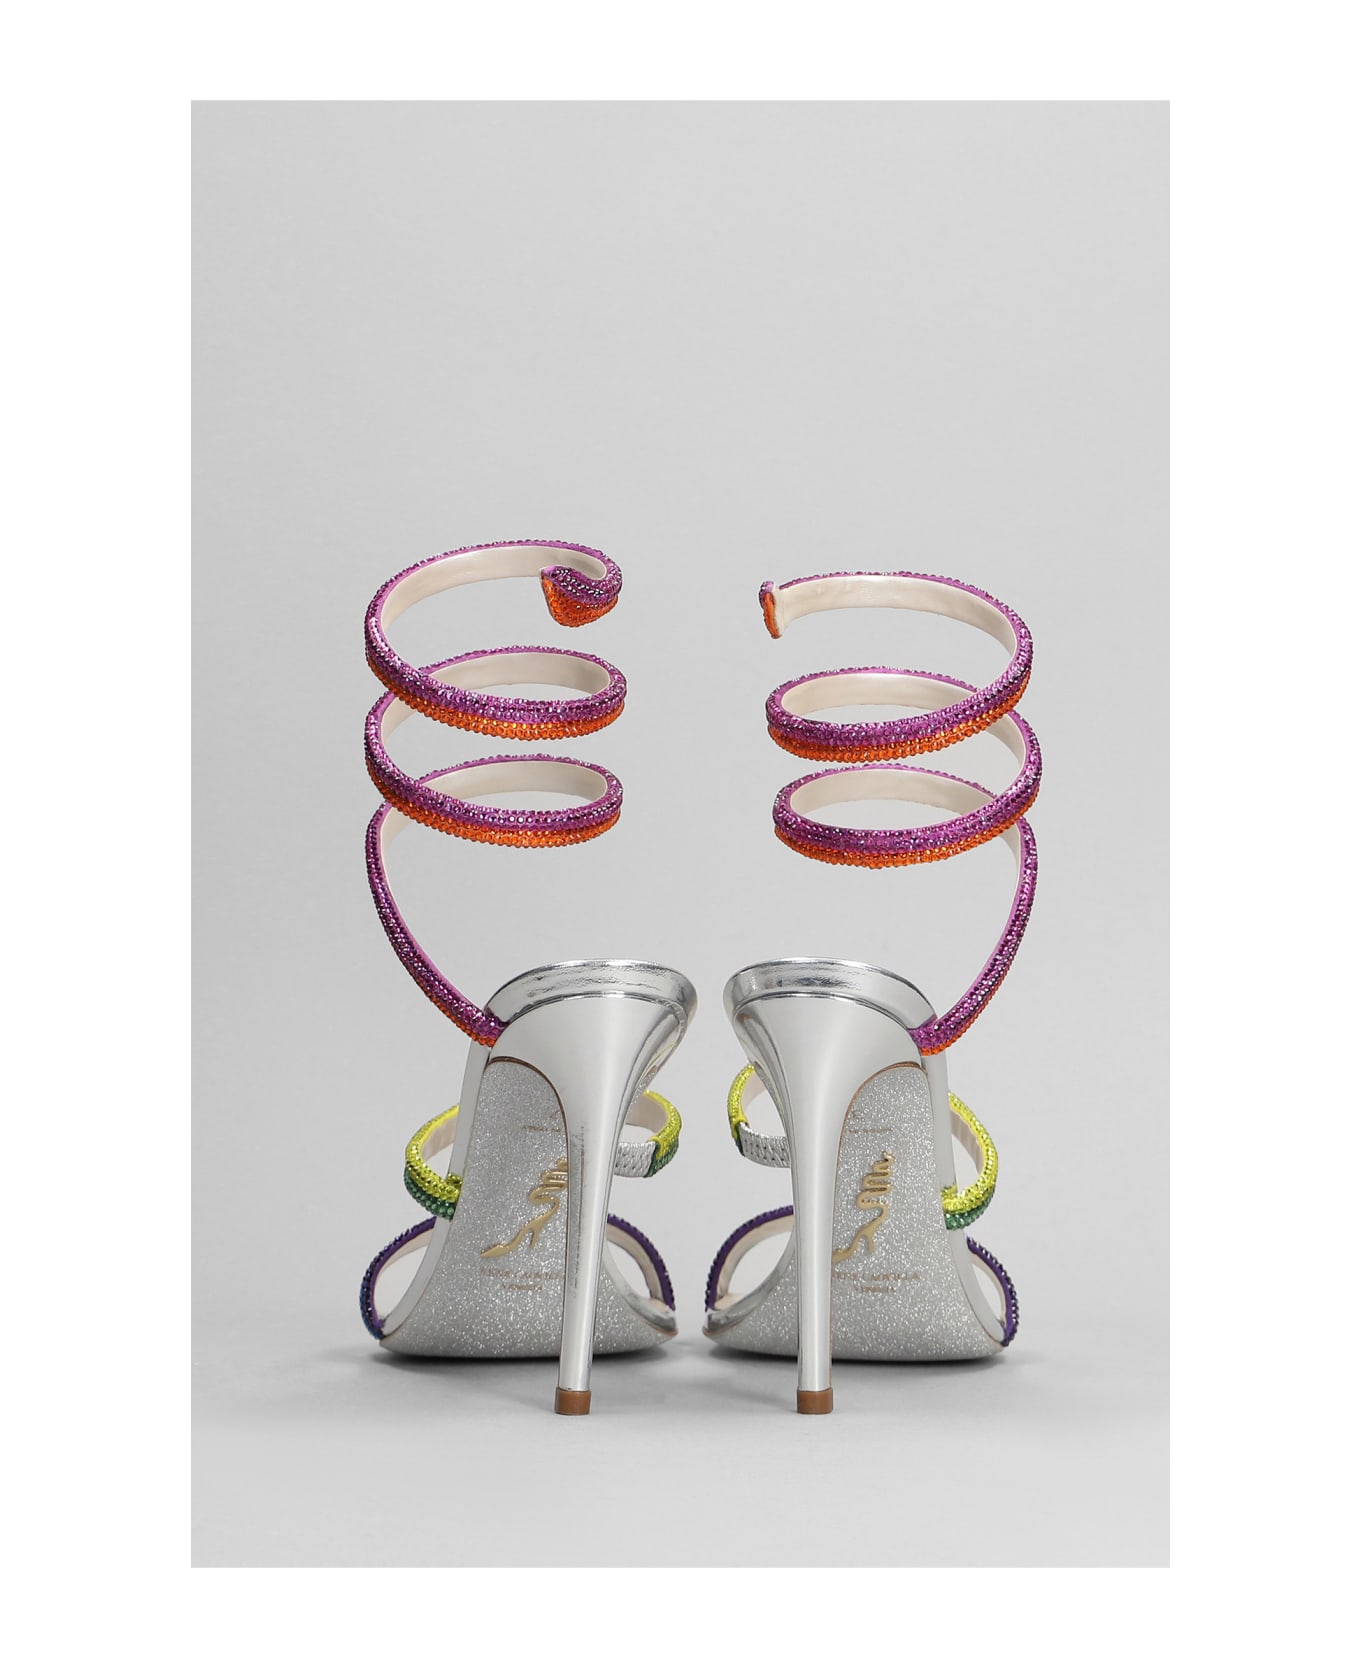 René Caovilla Rainbow Sandals In Silver Leather - silver サンダル